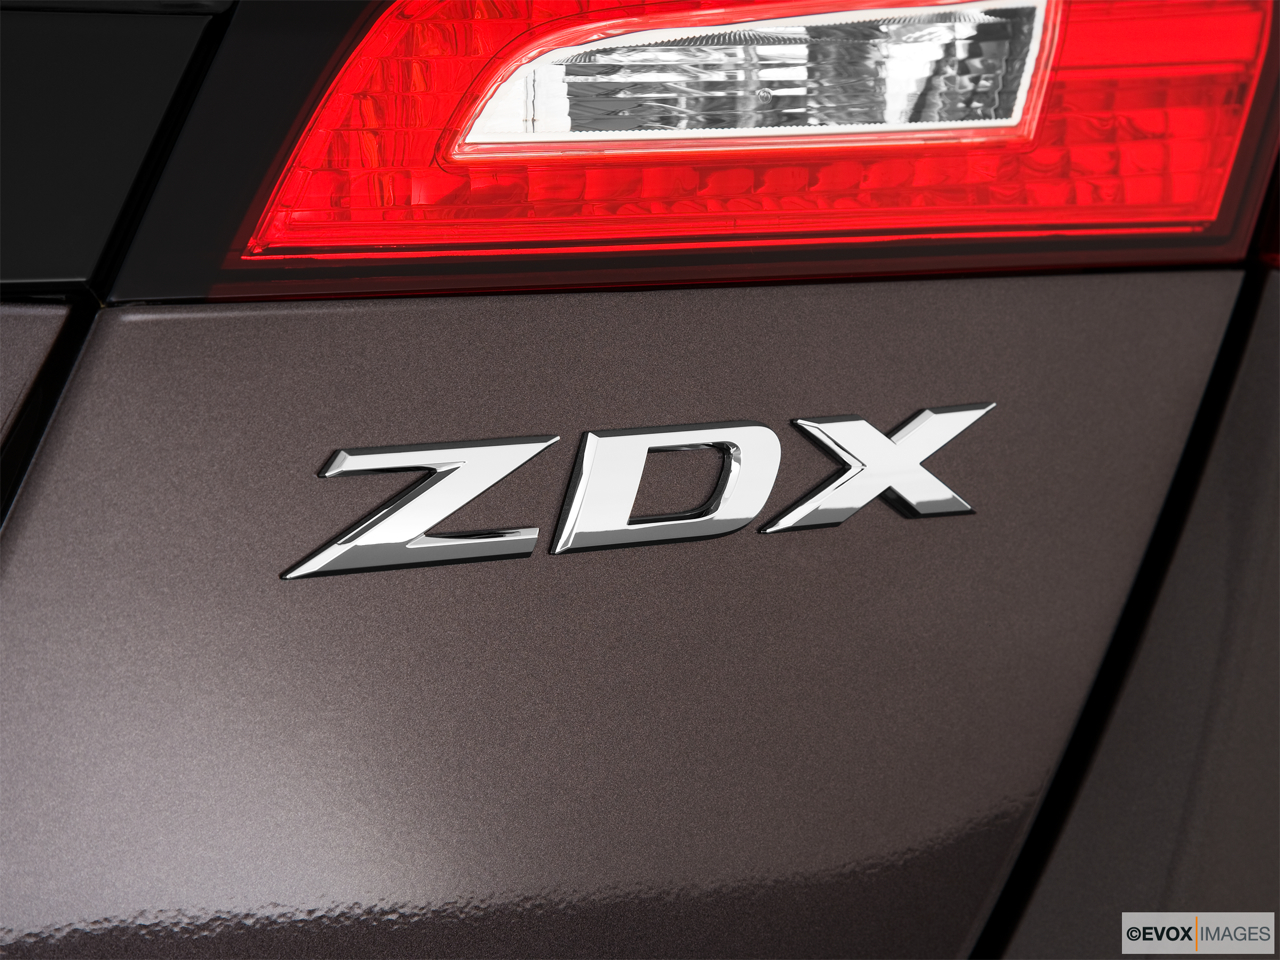 2010 Acura ZDX ZDX Advance Rear model badge/emblem 